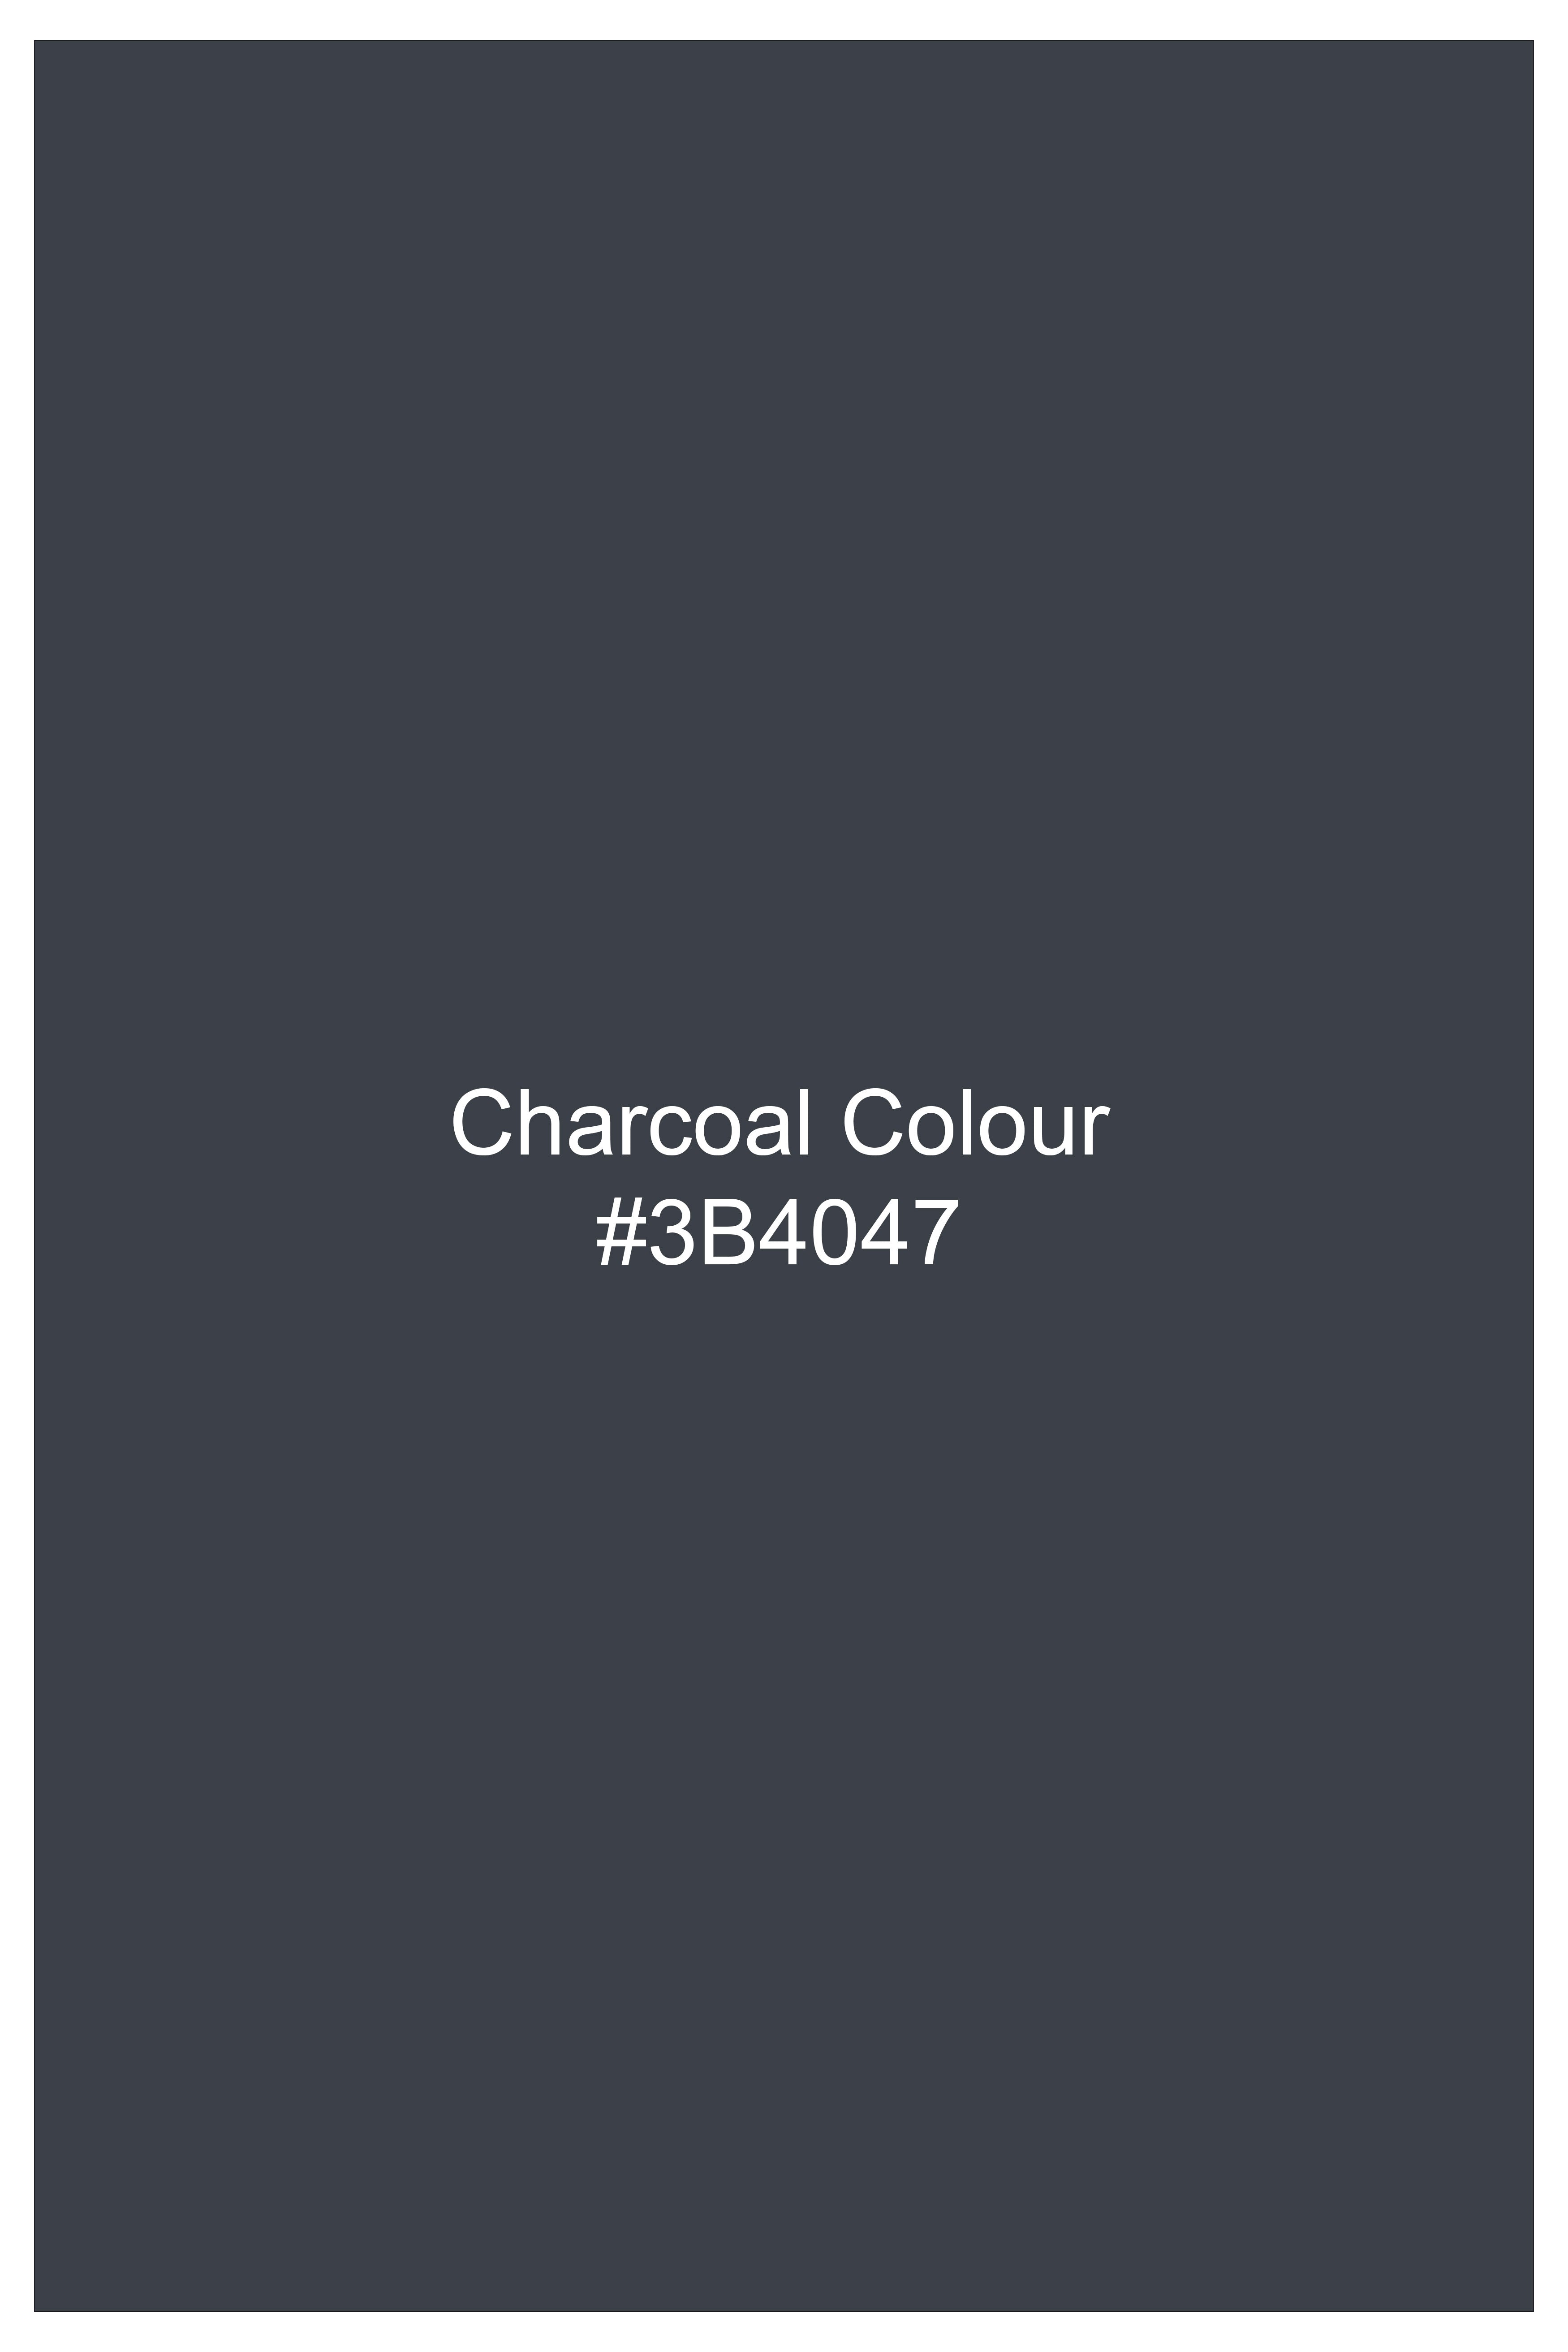 Charcoal Gray Royal Oxford Cotton Lounge Pant